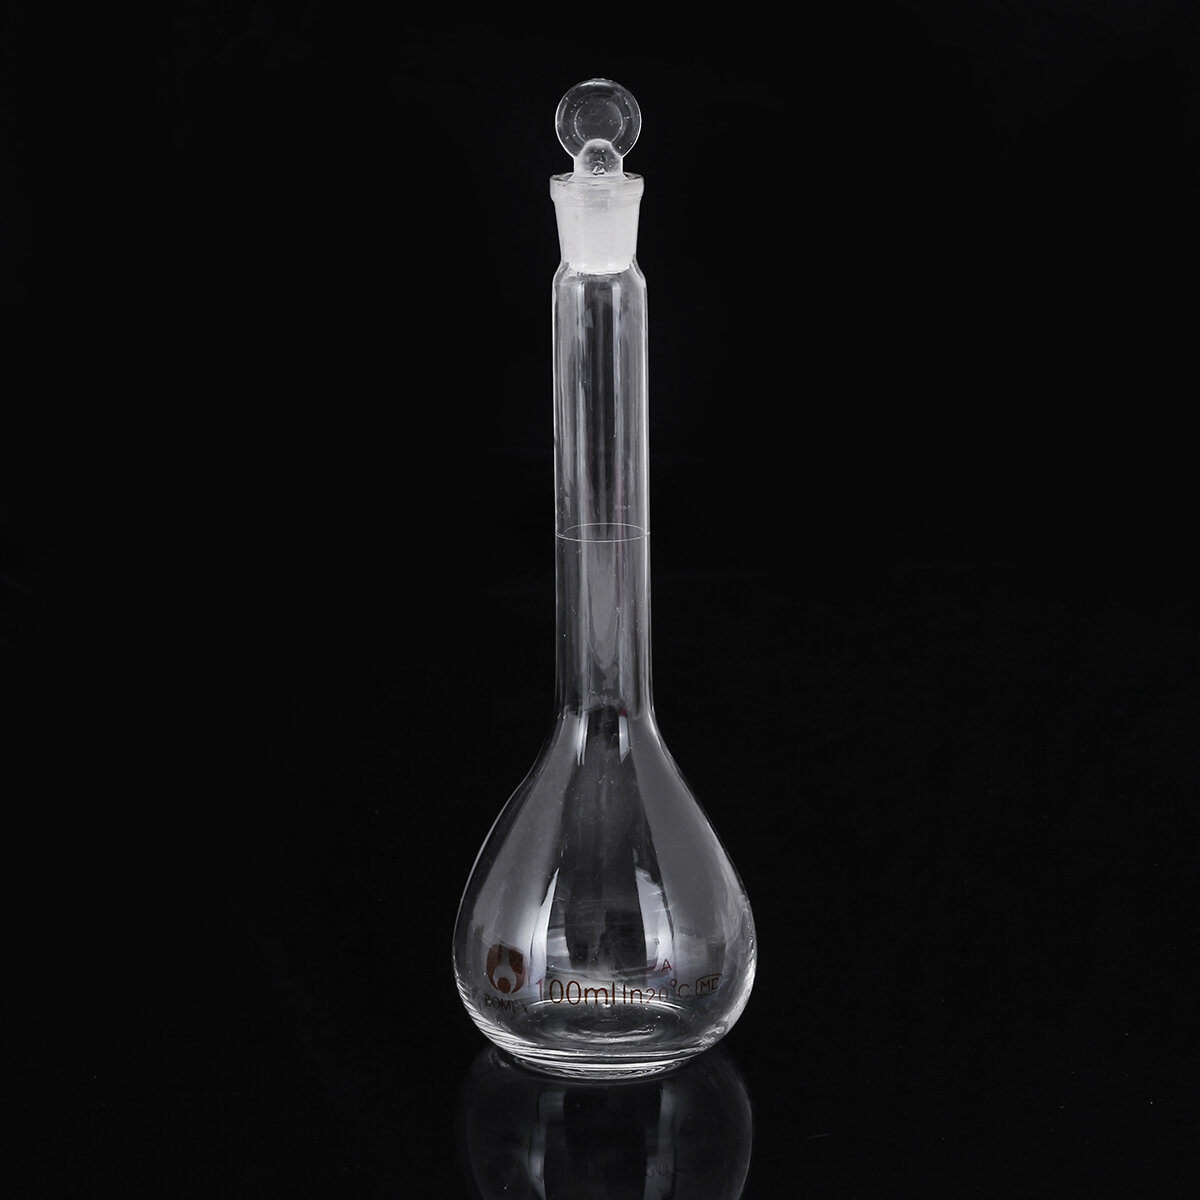 100mL Clear Glass Volumetric Flask w/ Glass Stopper Lab Chemistry Glassware